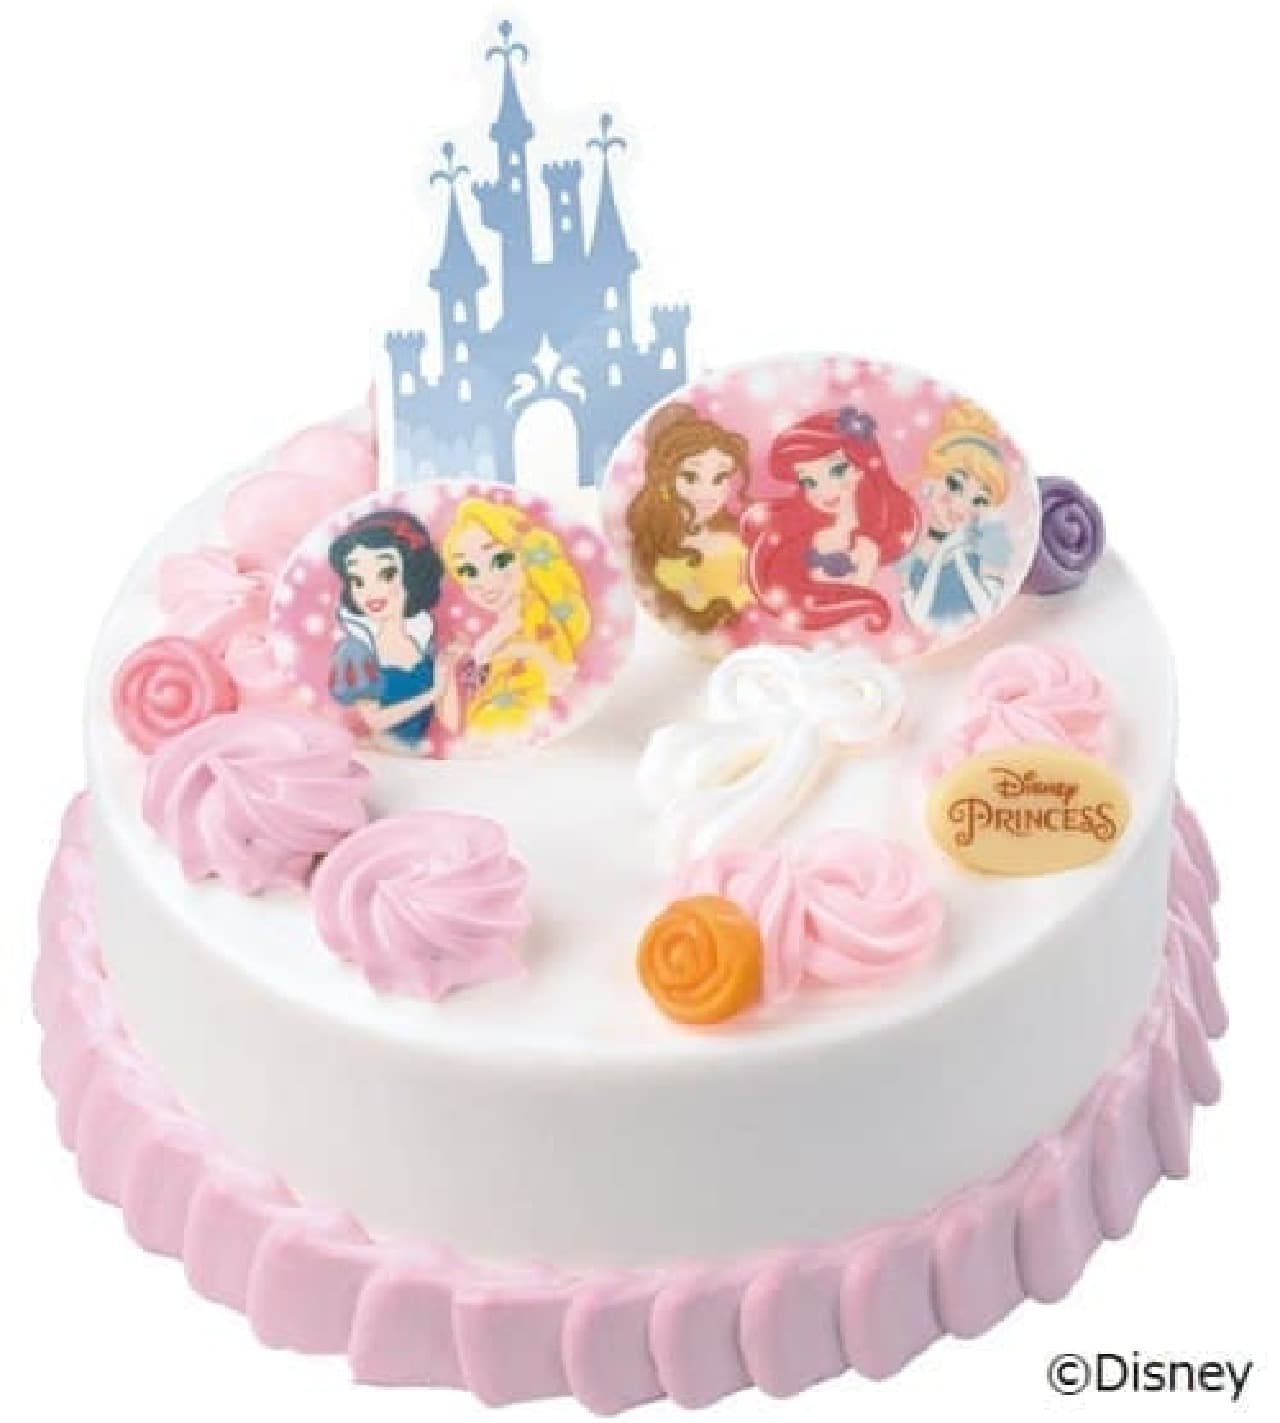 Thirty One Ice Cream "Dreamy Princess Cake"